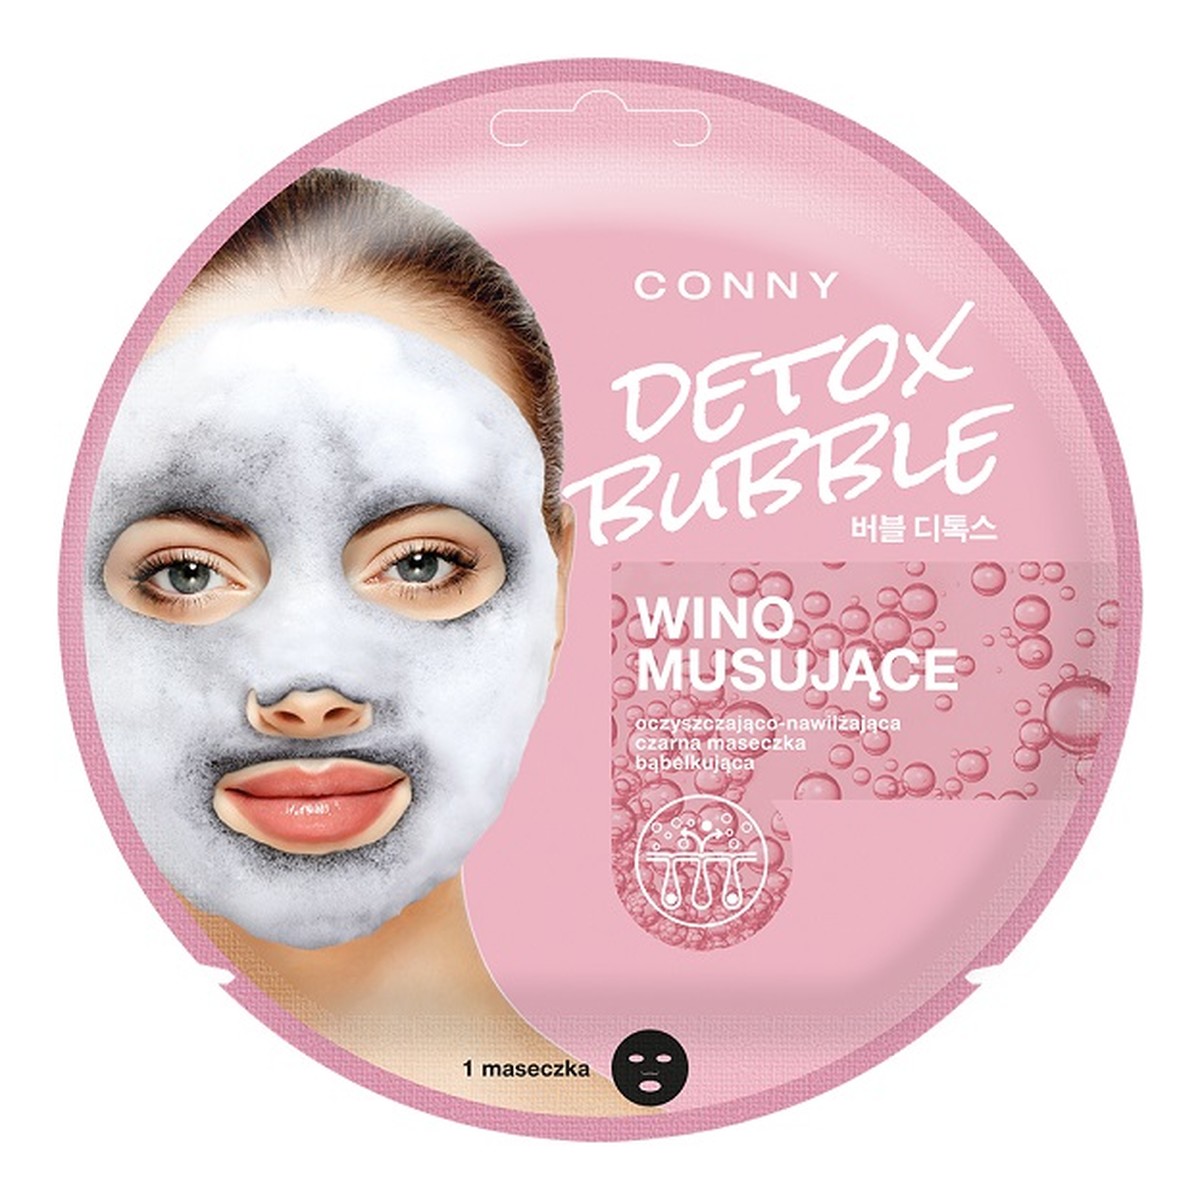 Conny Detox Bubble Mask oczyszczająco-nawilżająca czarna maseczka bąbelkująca do twarzy Wino Musujące 1szt 20g